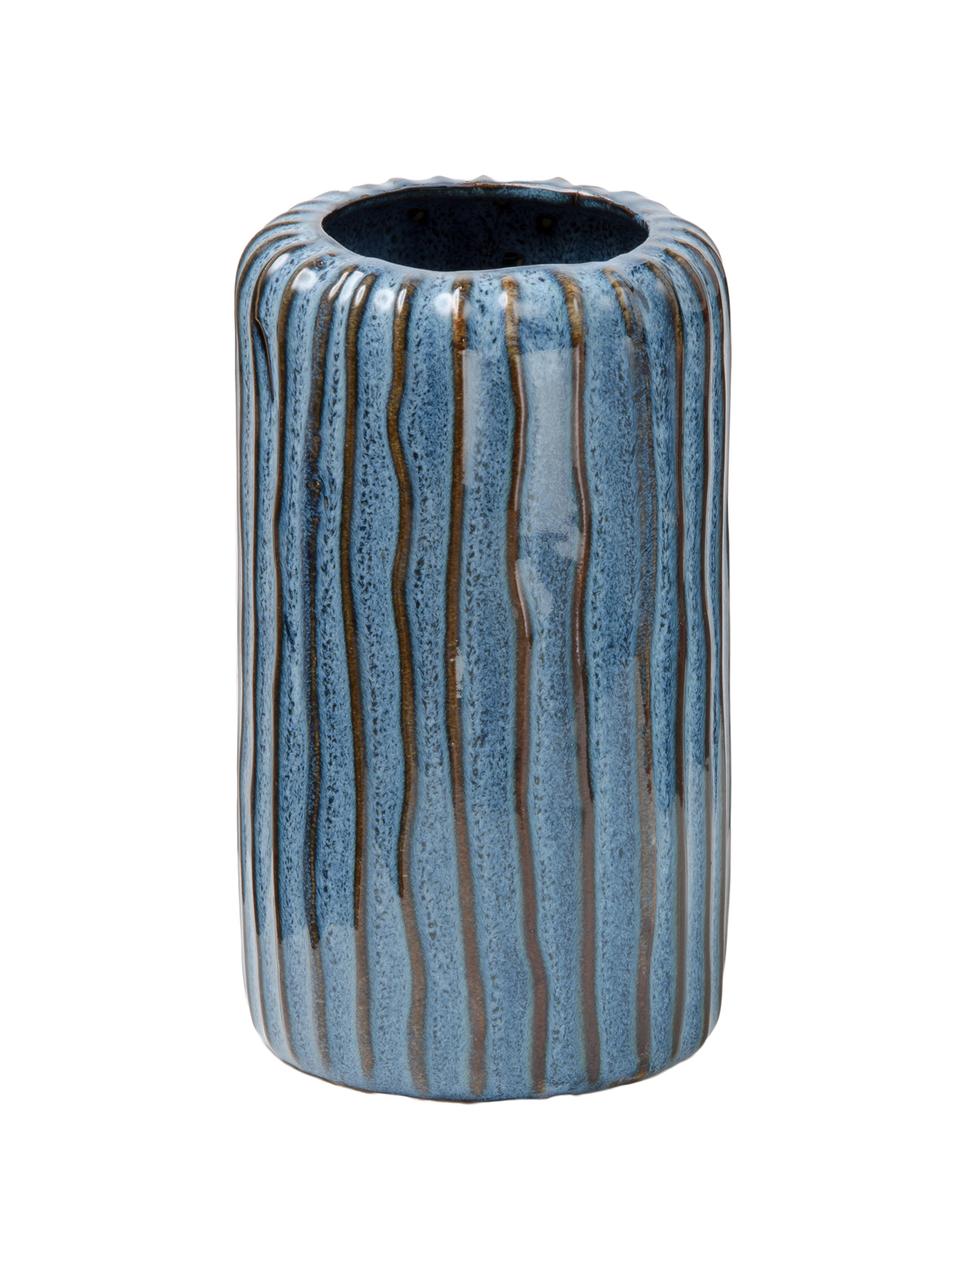 Komplet wazonów z porcelany Aquarel, 3 elem., Porcelana, Odcienie niebieskiego z gradientem, Komplet z różnymi rozmiarami